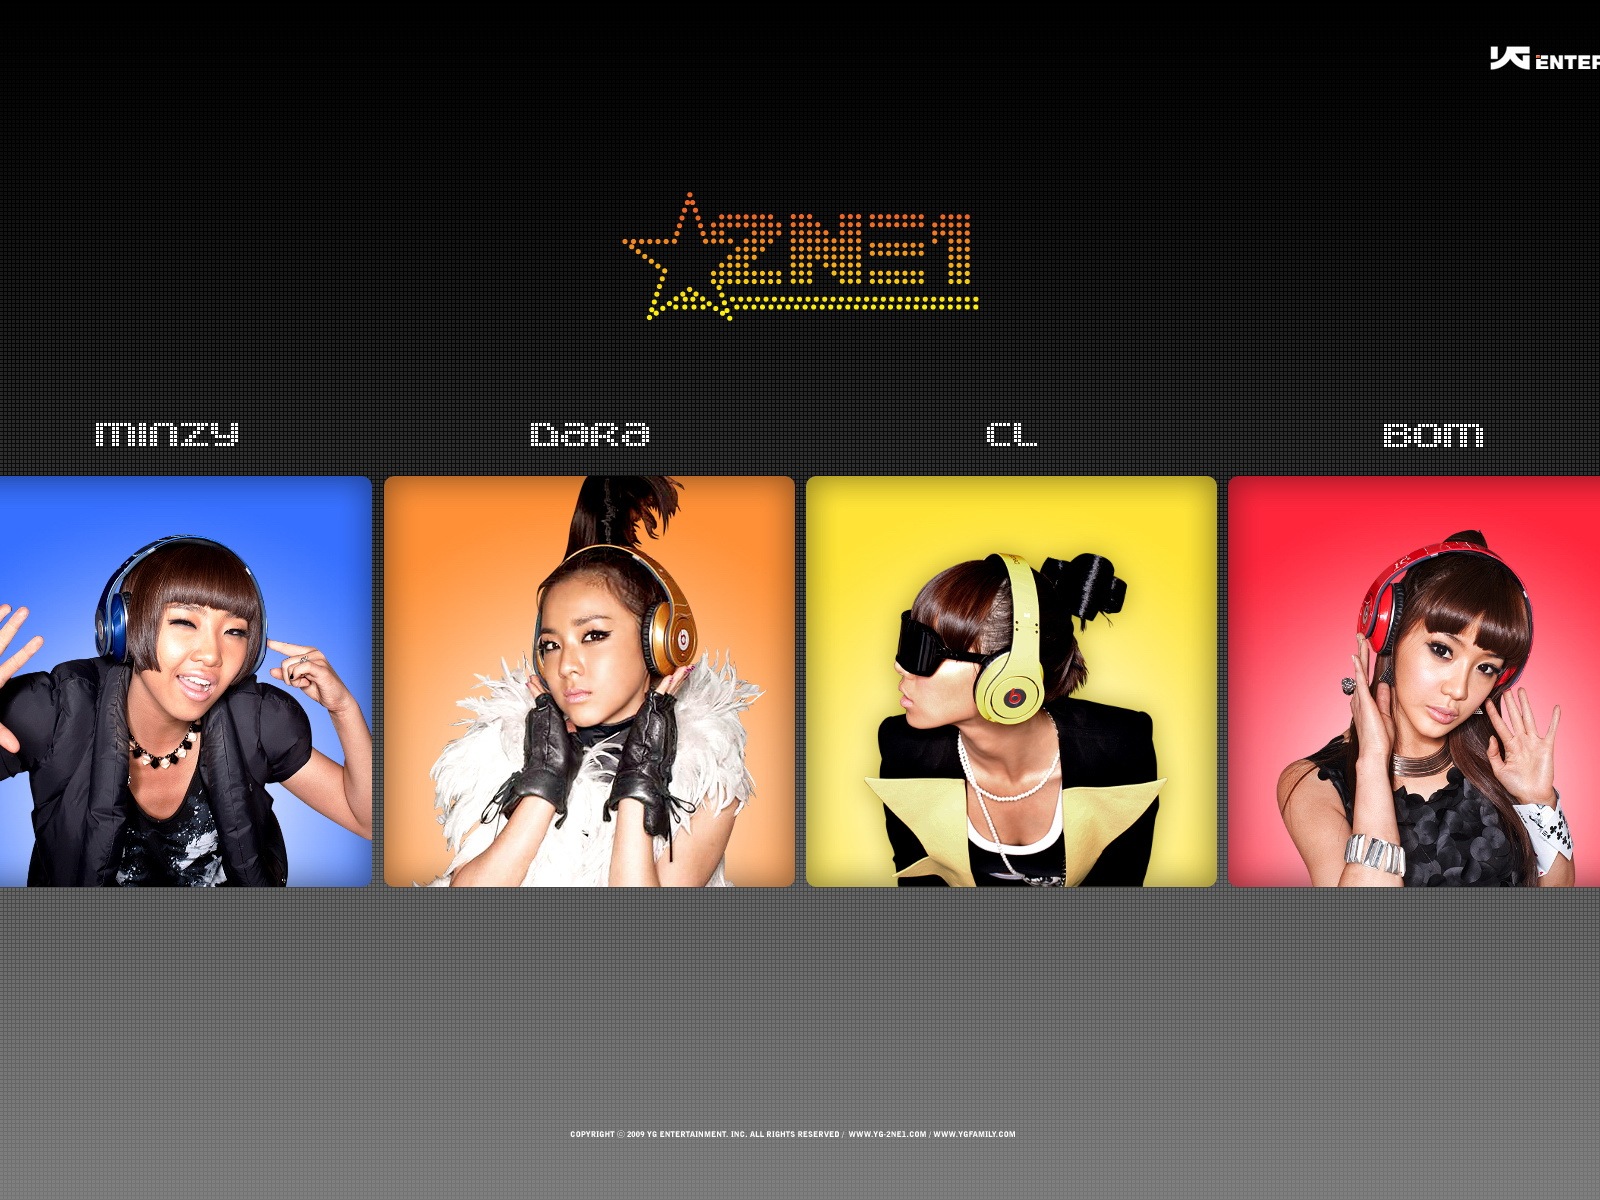 韩国音乐女孩组合 2NE1 高清壁纸16 - 1600x1200